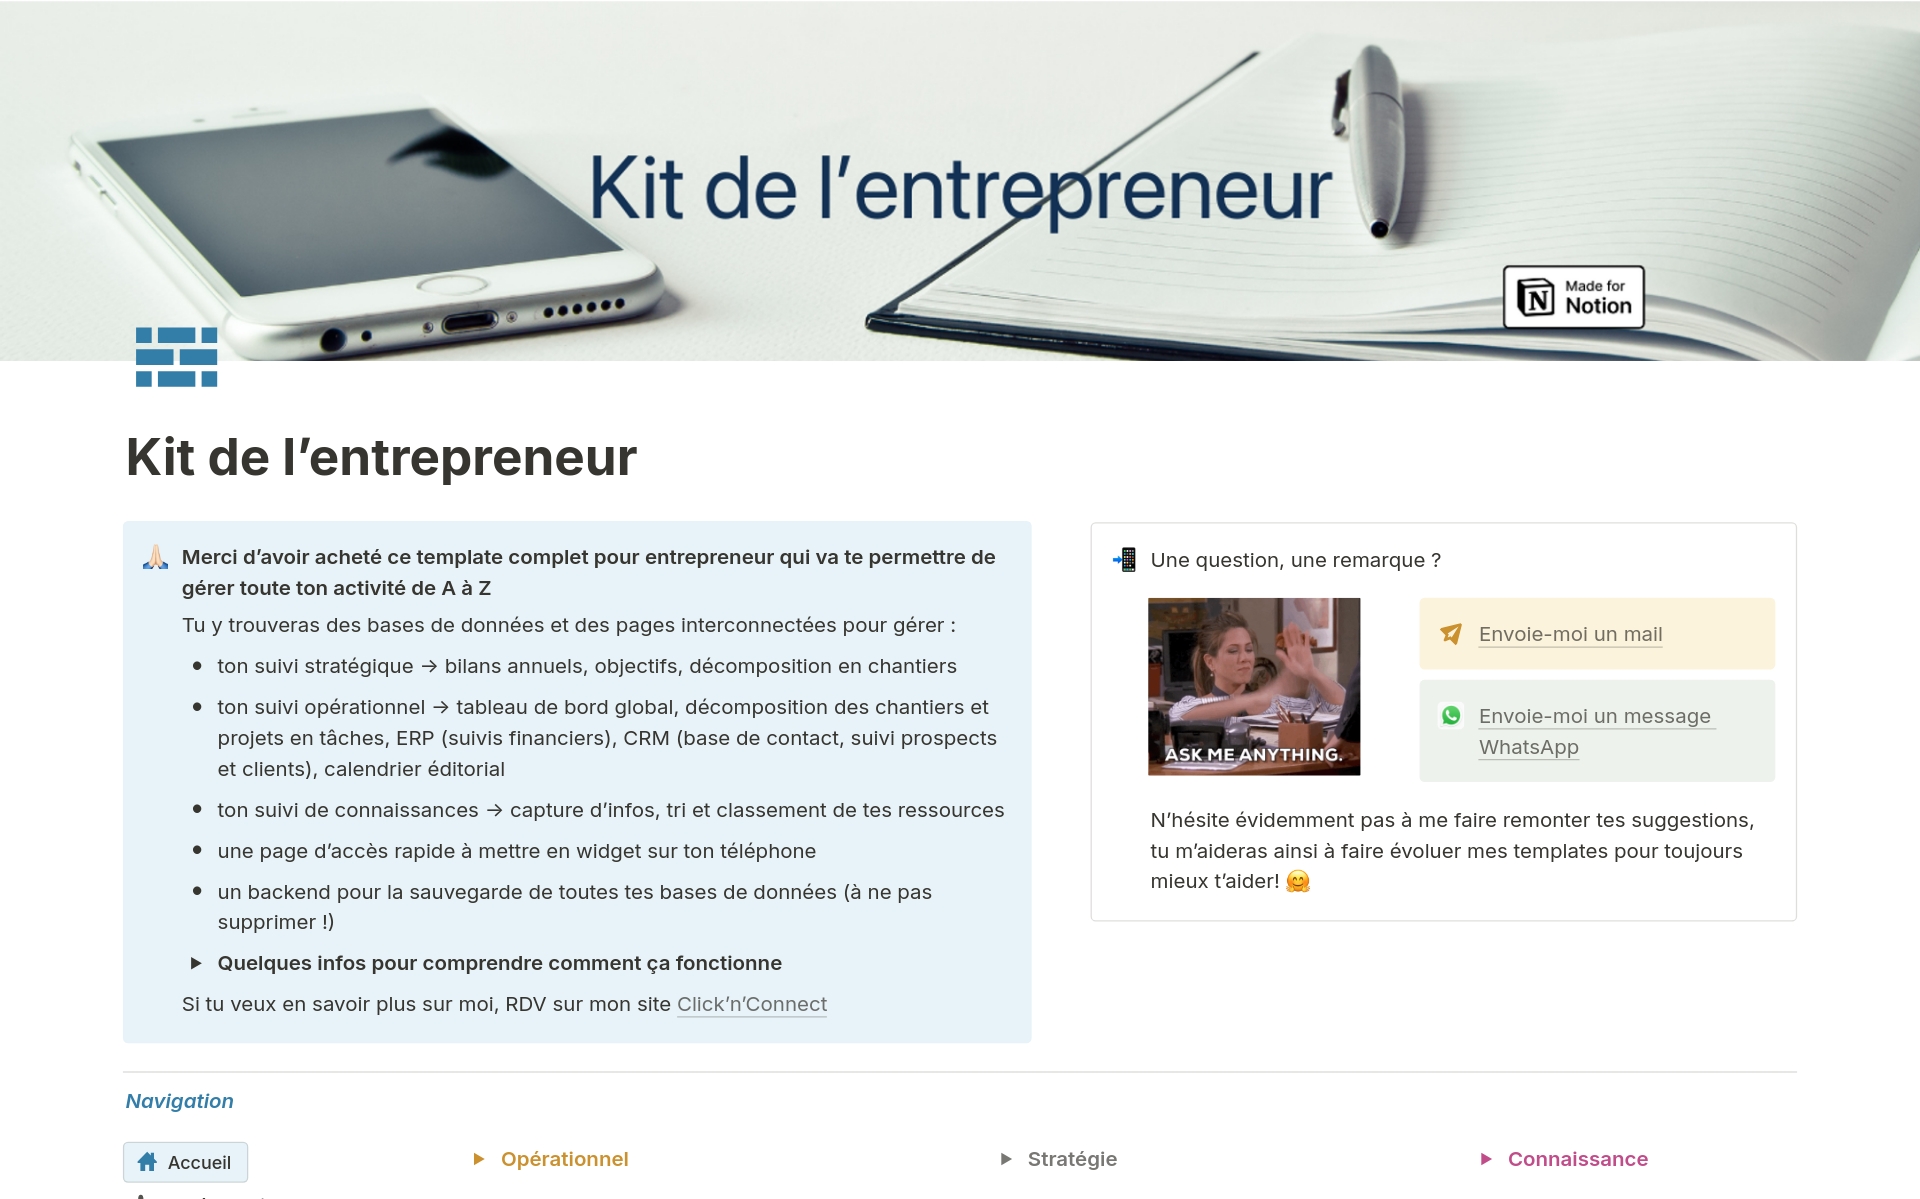 A template preview for Kit de l'entrepreneur